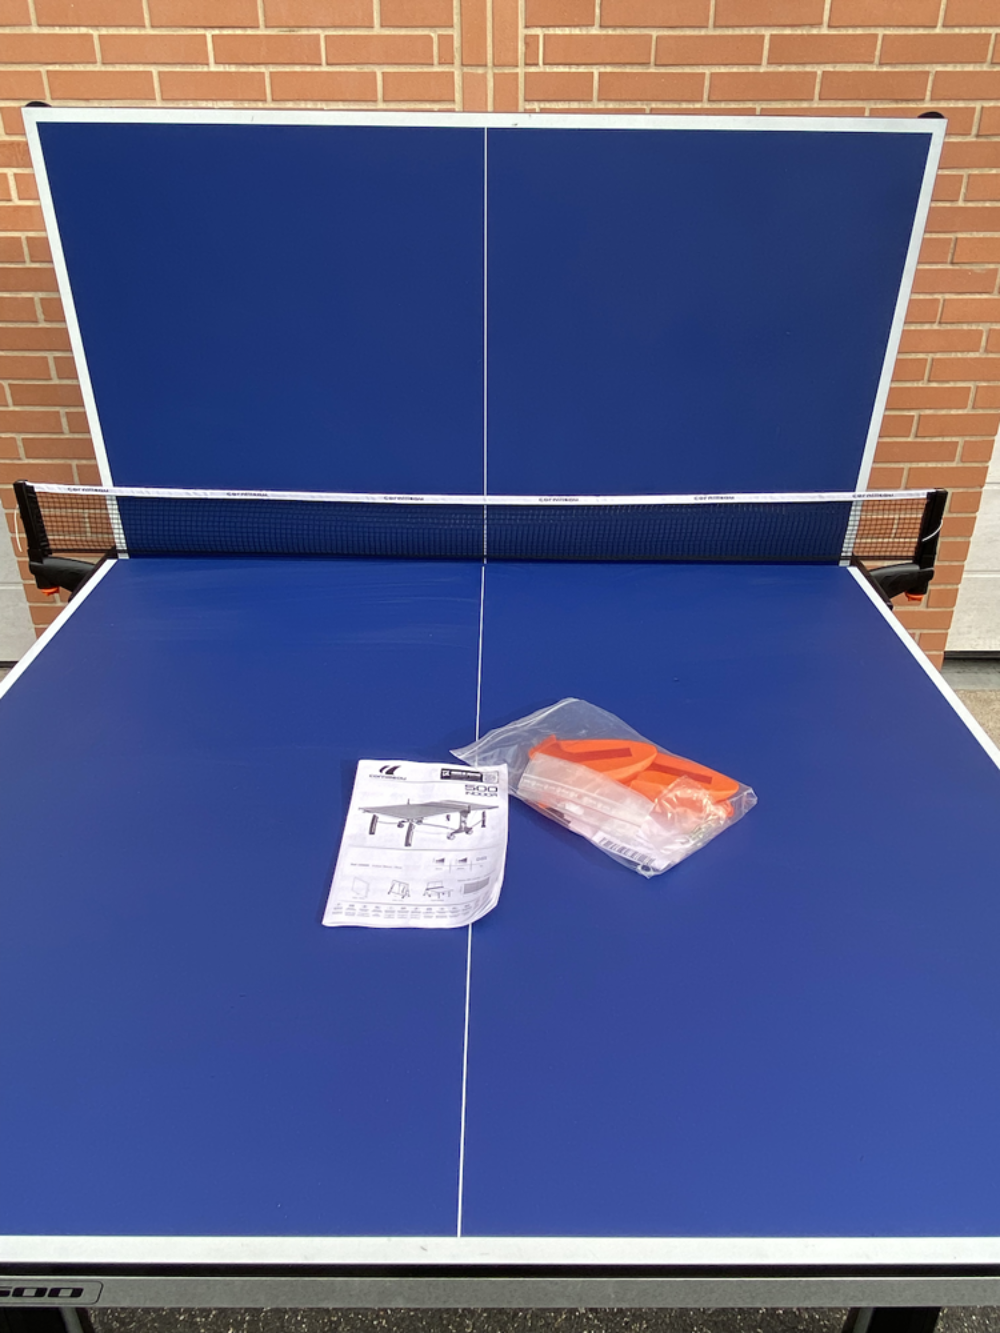 Table de ping pong / tennis de table Sports